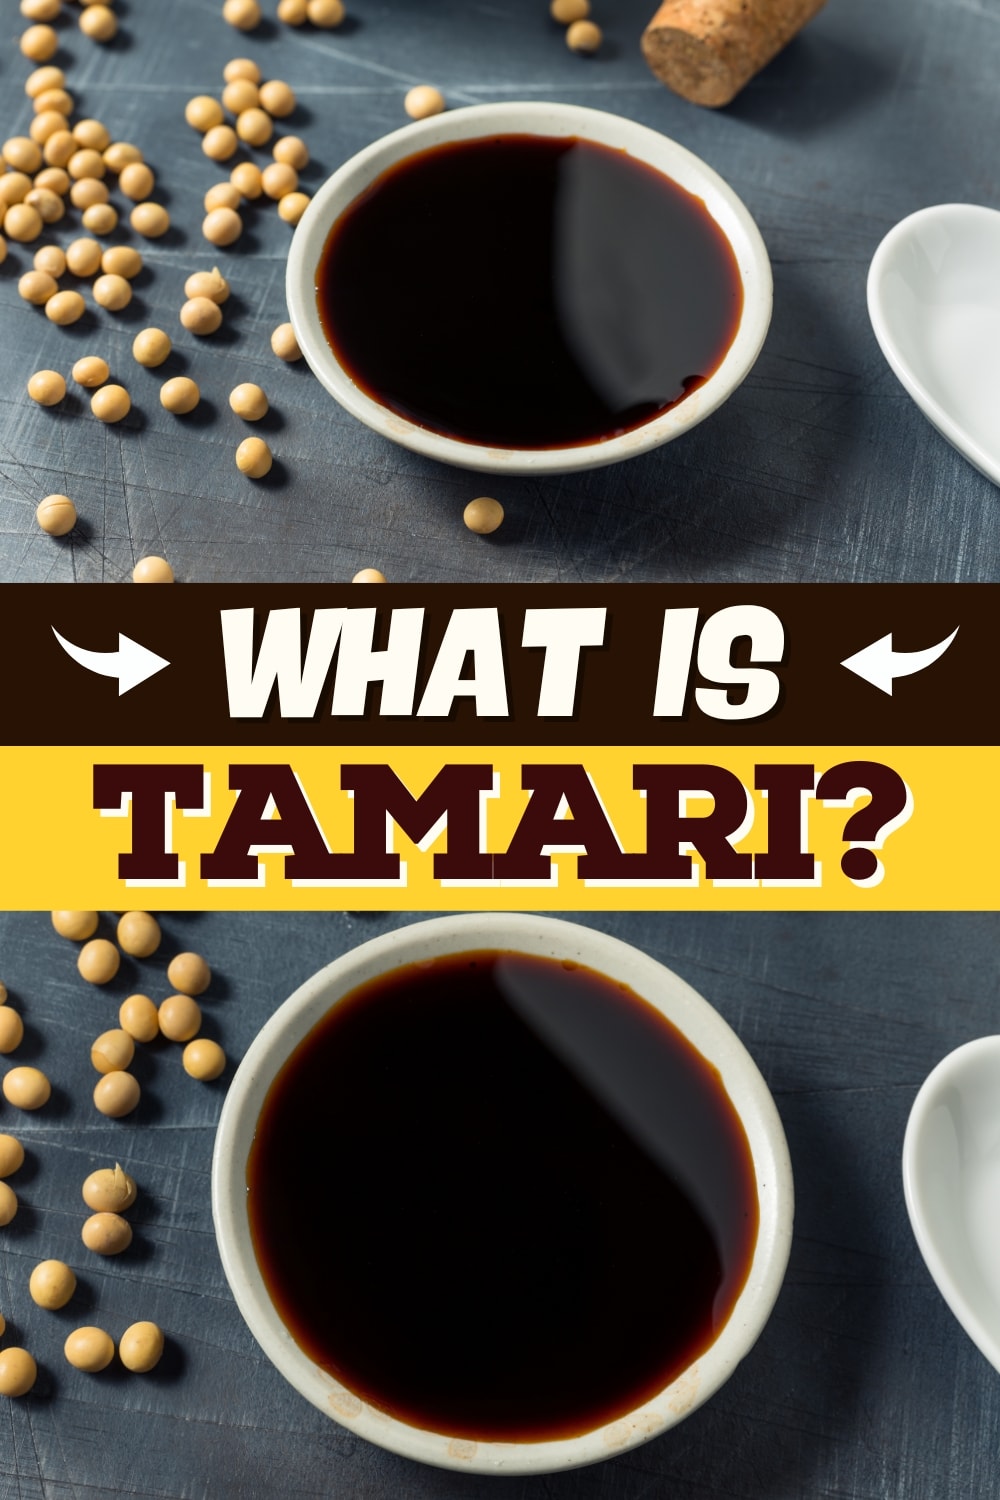 What Is Tamari?